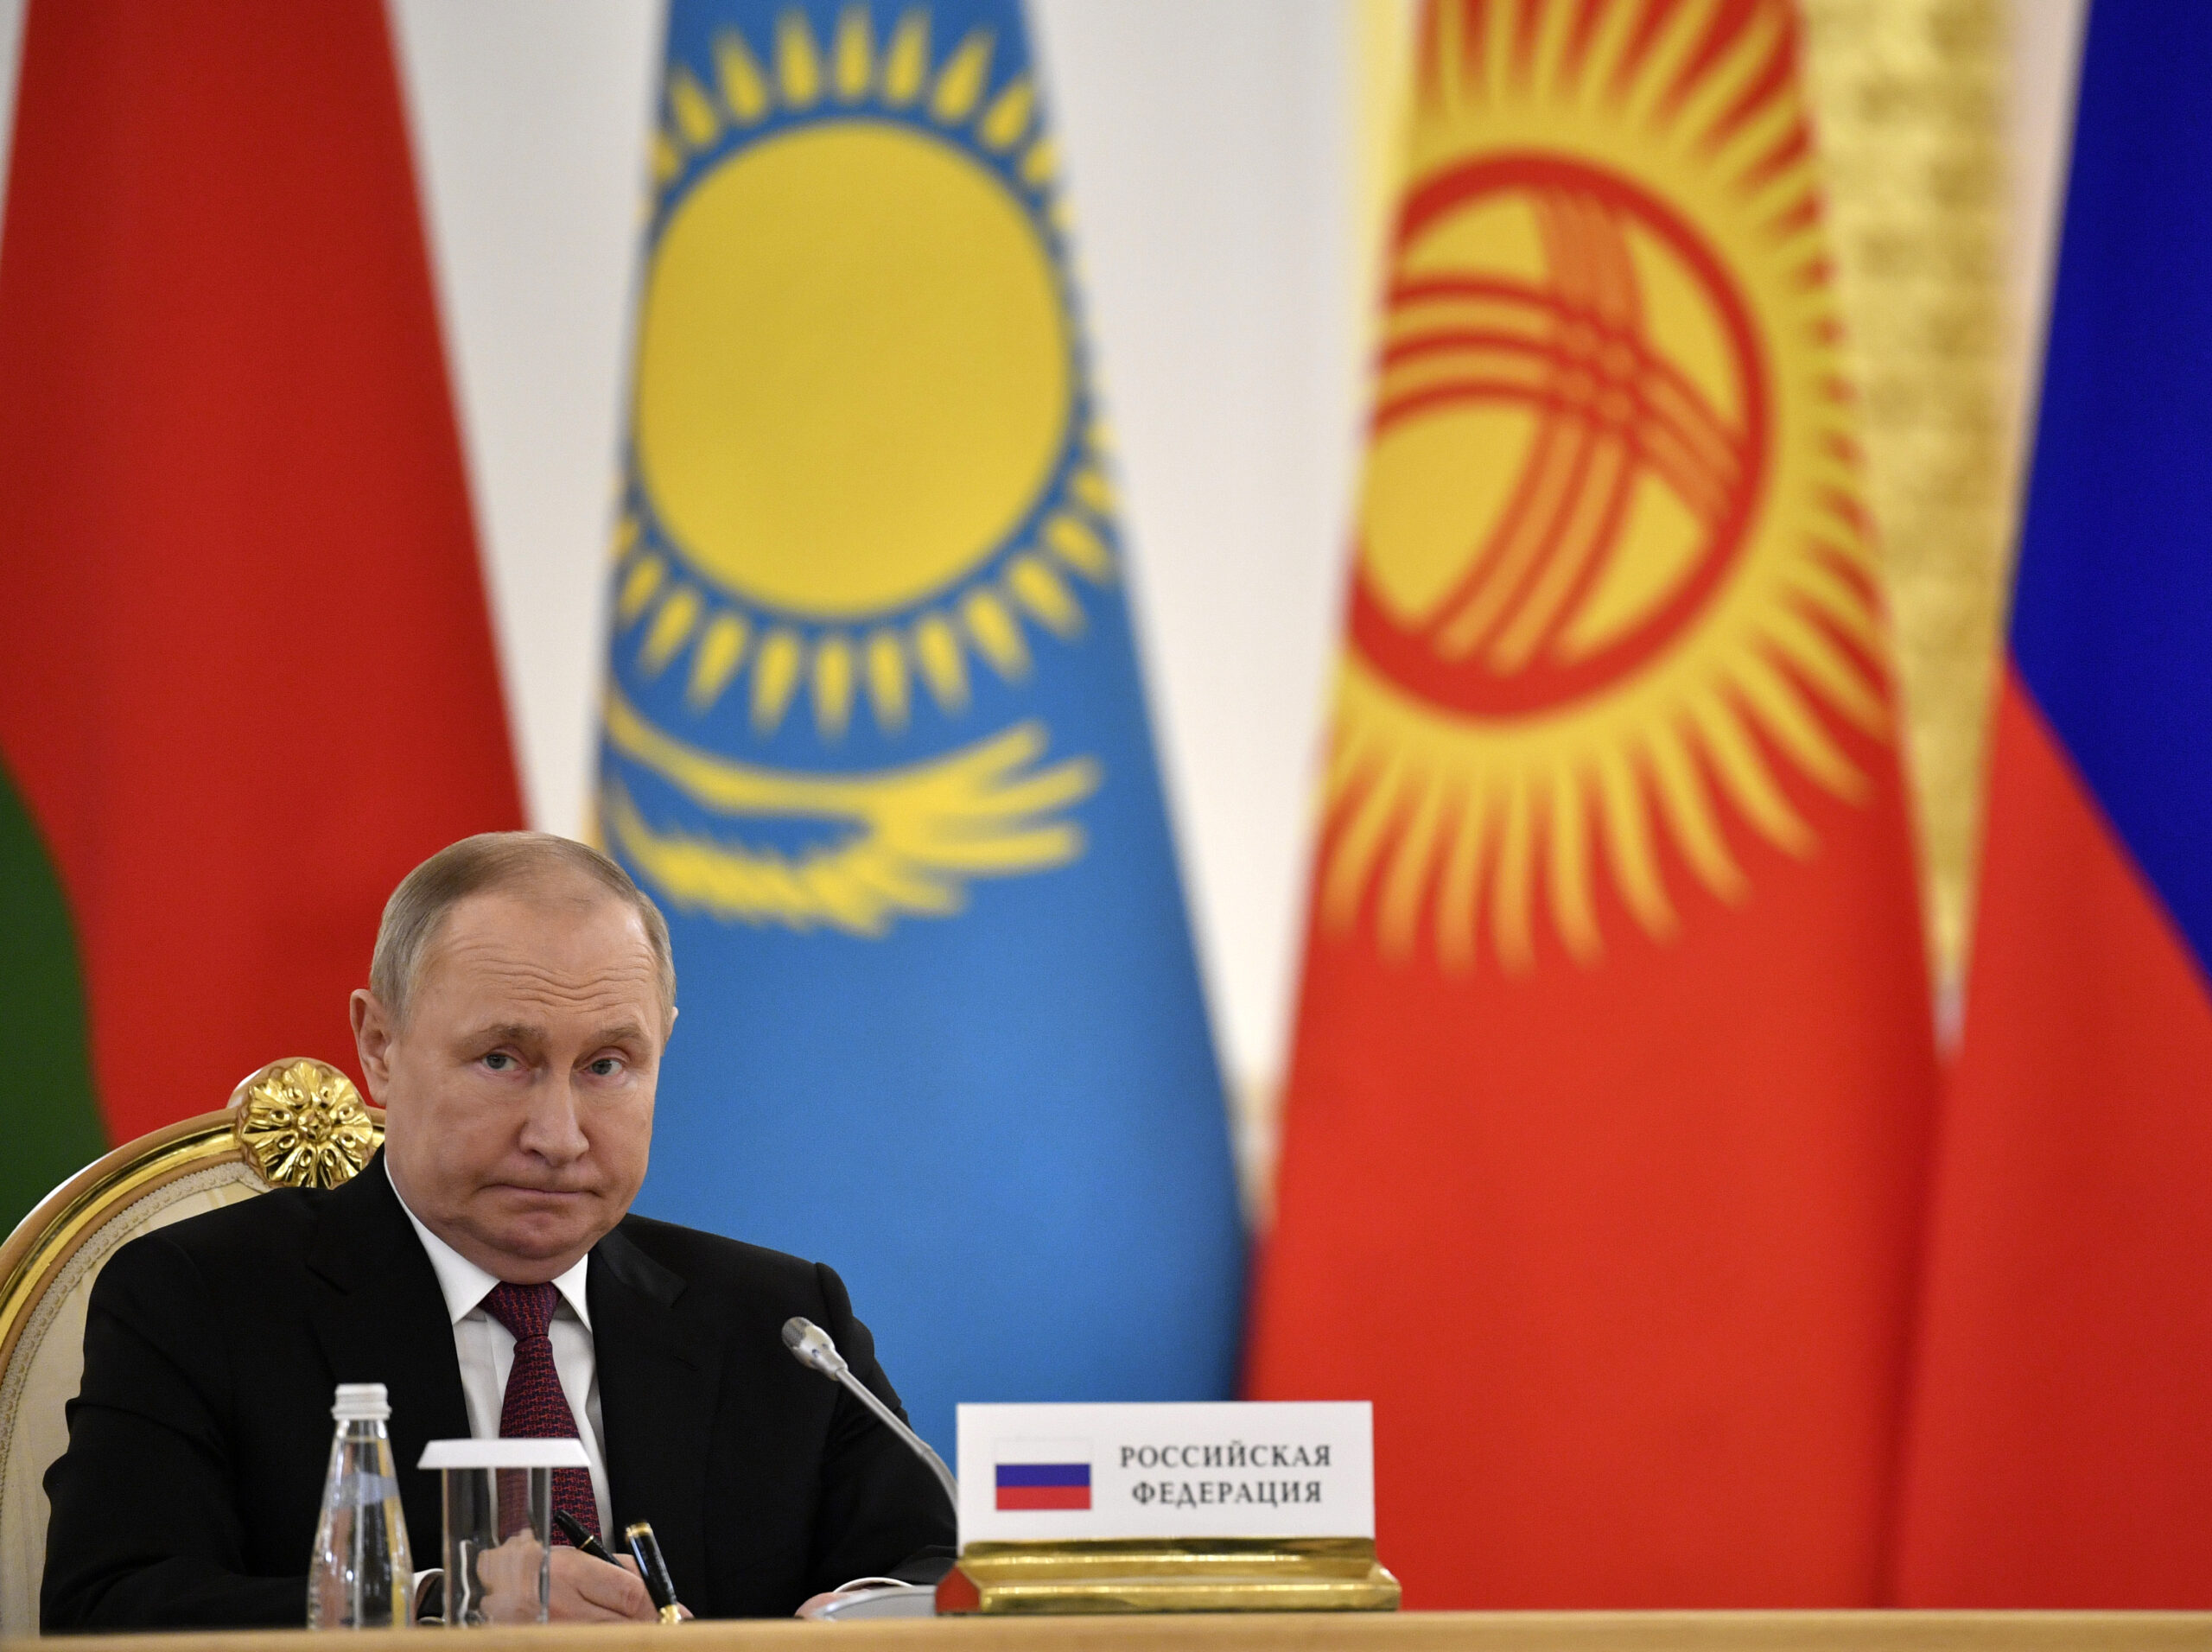 Es läuft in der Ukraine nicht so wie von ihm gedacht: Wladimir Putin, Präsident von Russland